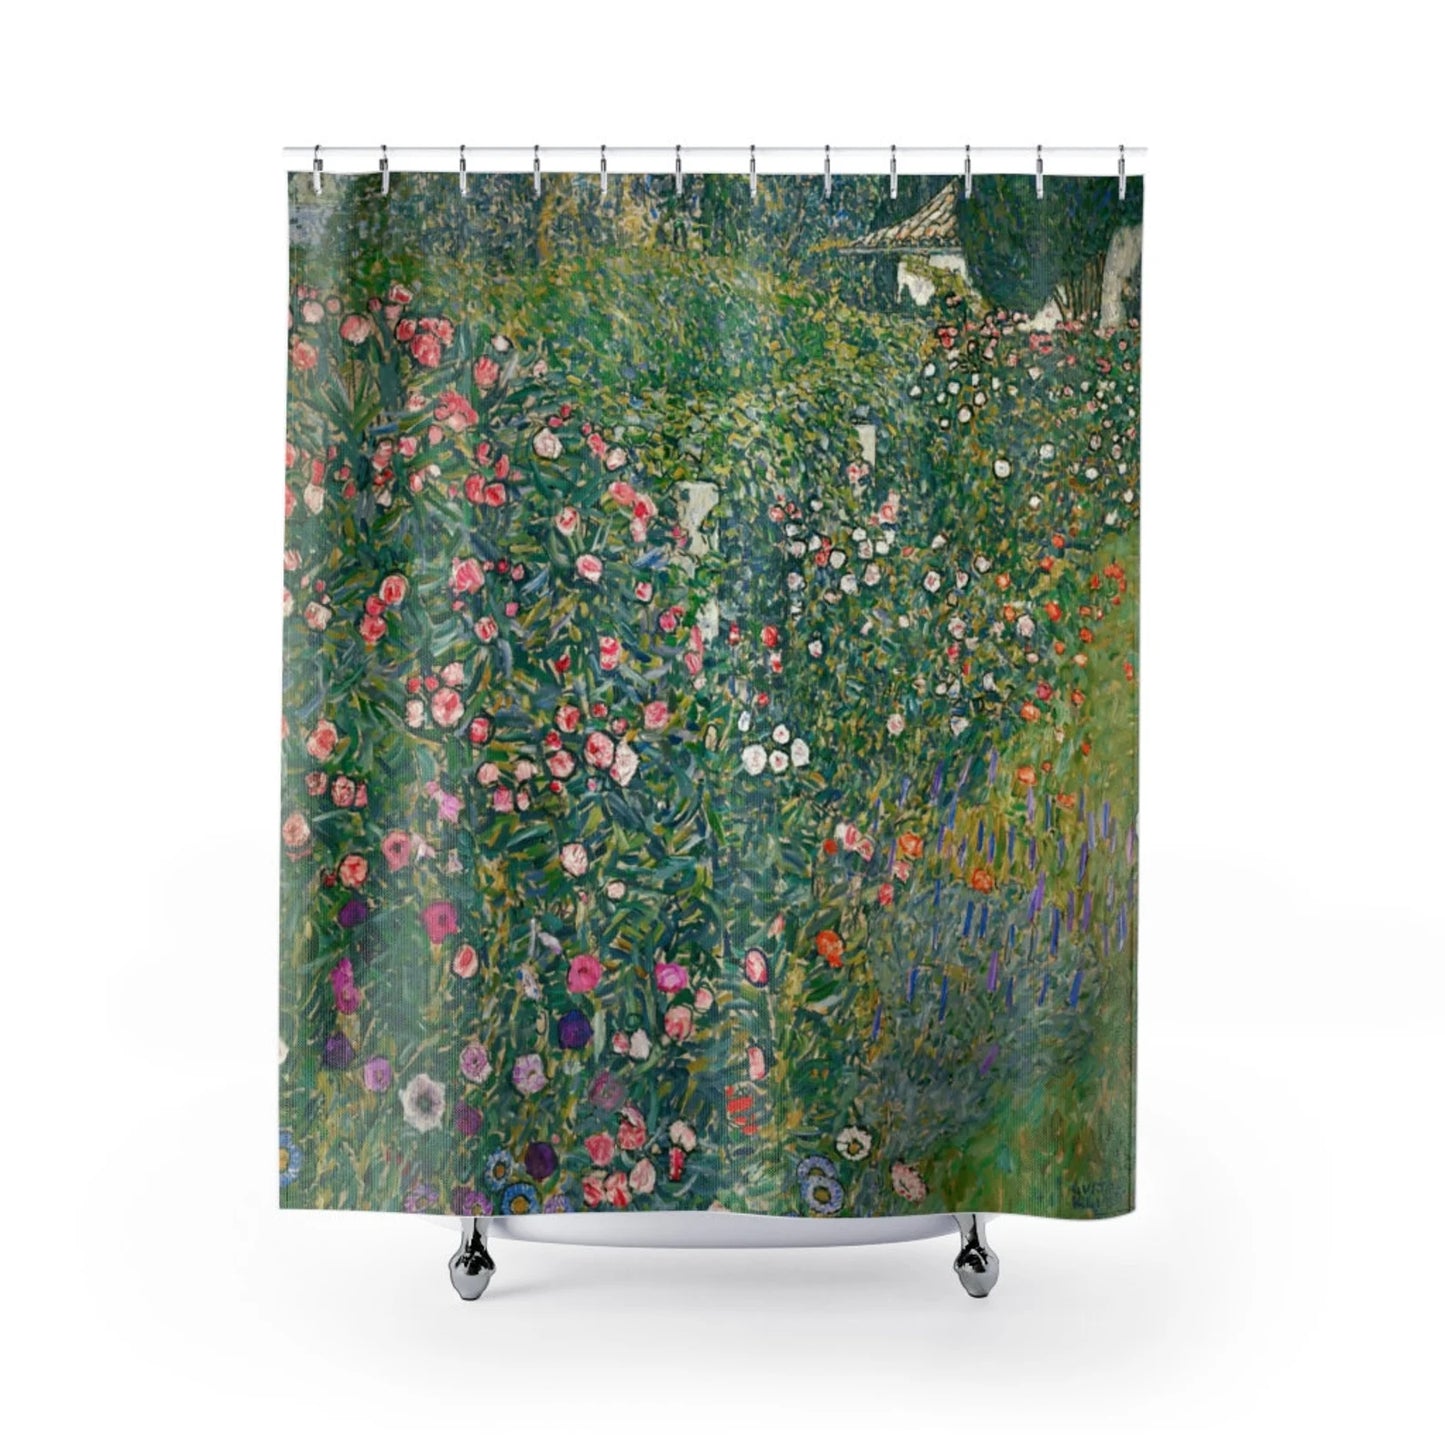 クリムトシャワーカーテン ファインアート、自然の雰囲気、花柄、クリムト絵画